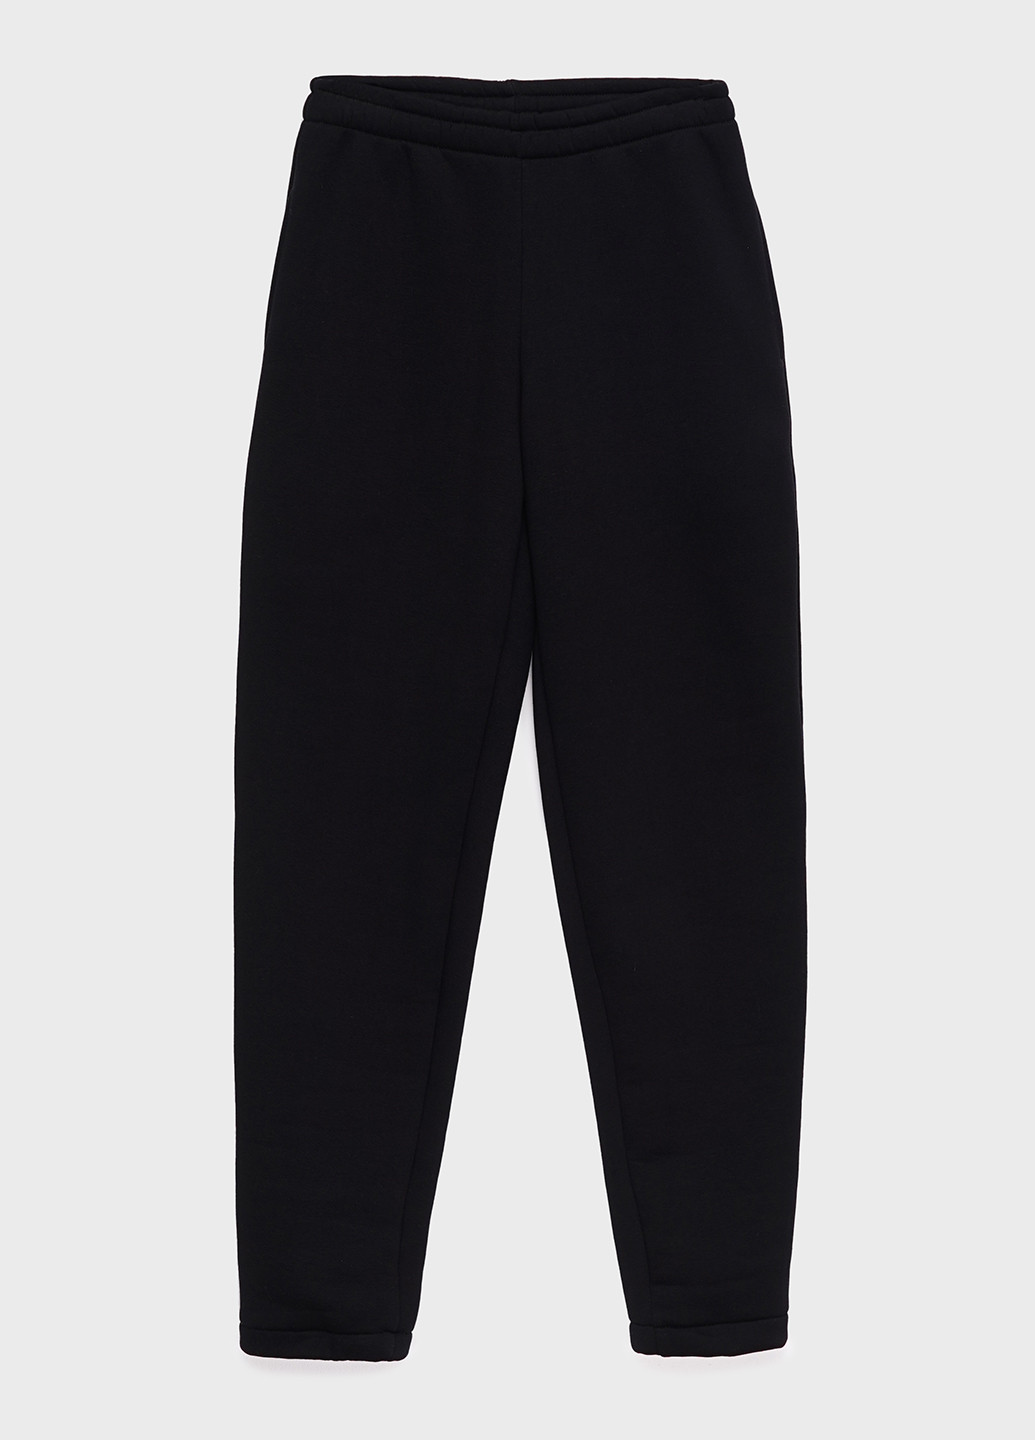 Спортиві брюки-джогери жіночі з начосом KASTA design джогери однотонні чорні спортивні поліестер, трикотаж, фліс